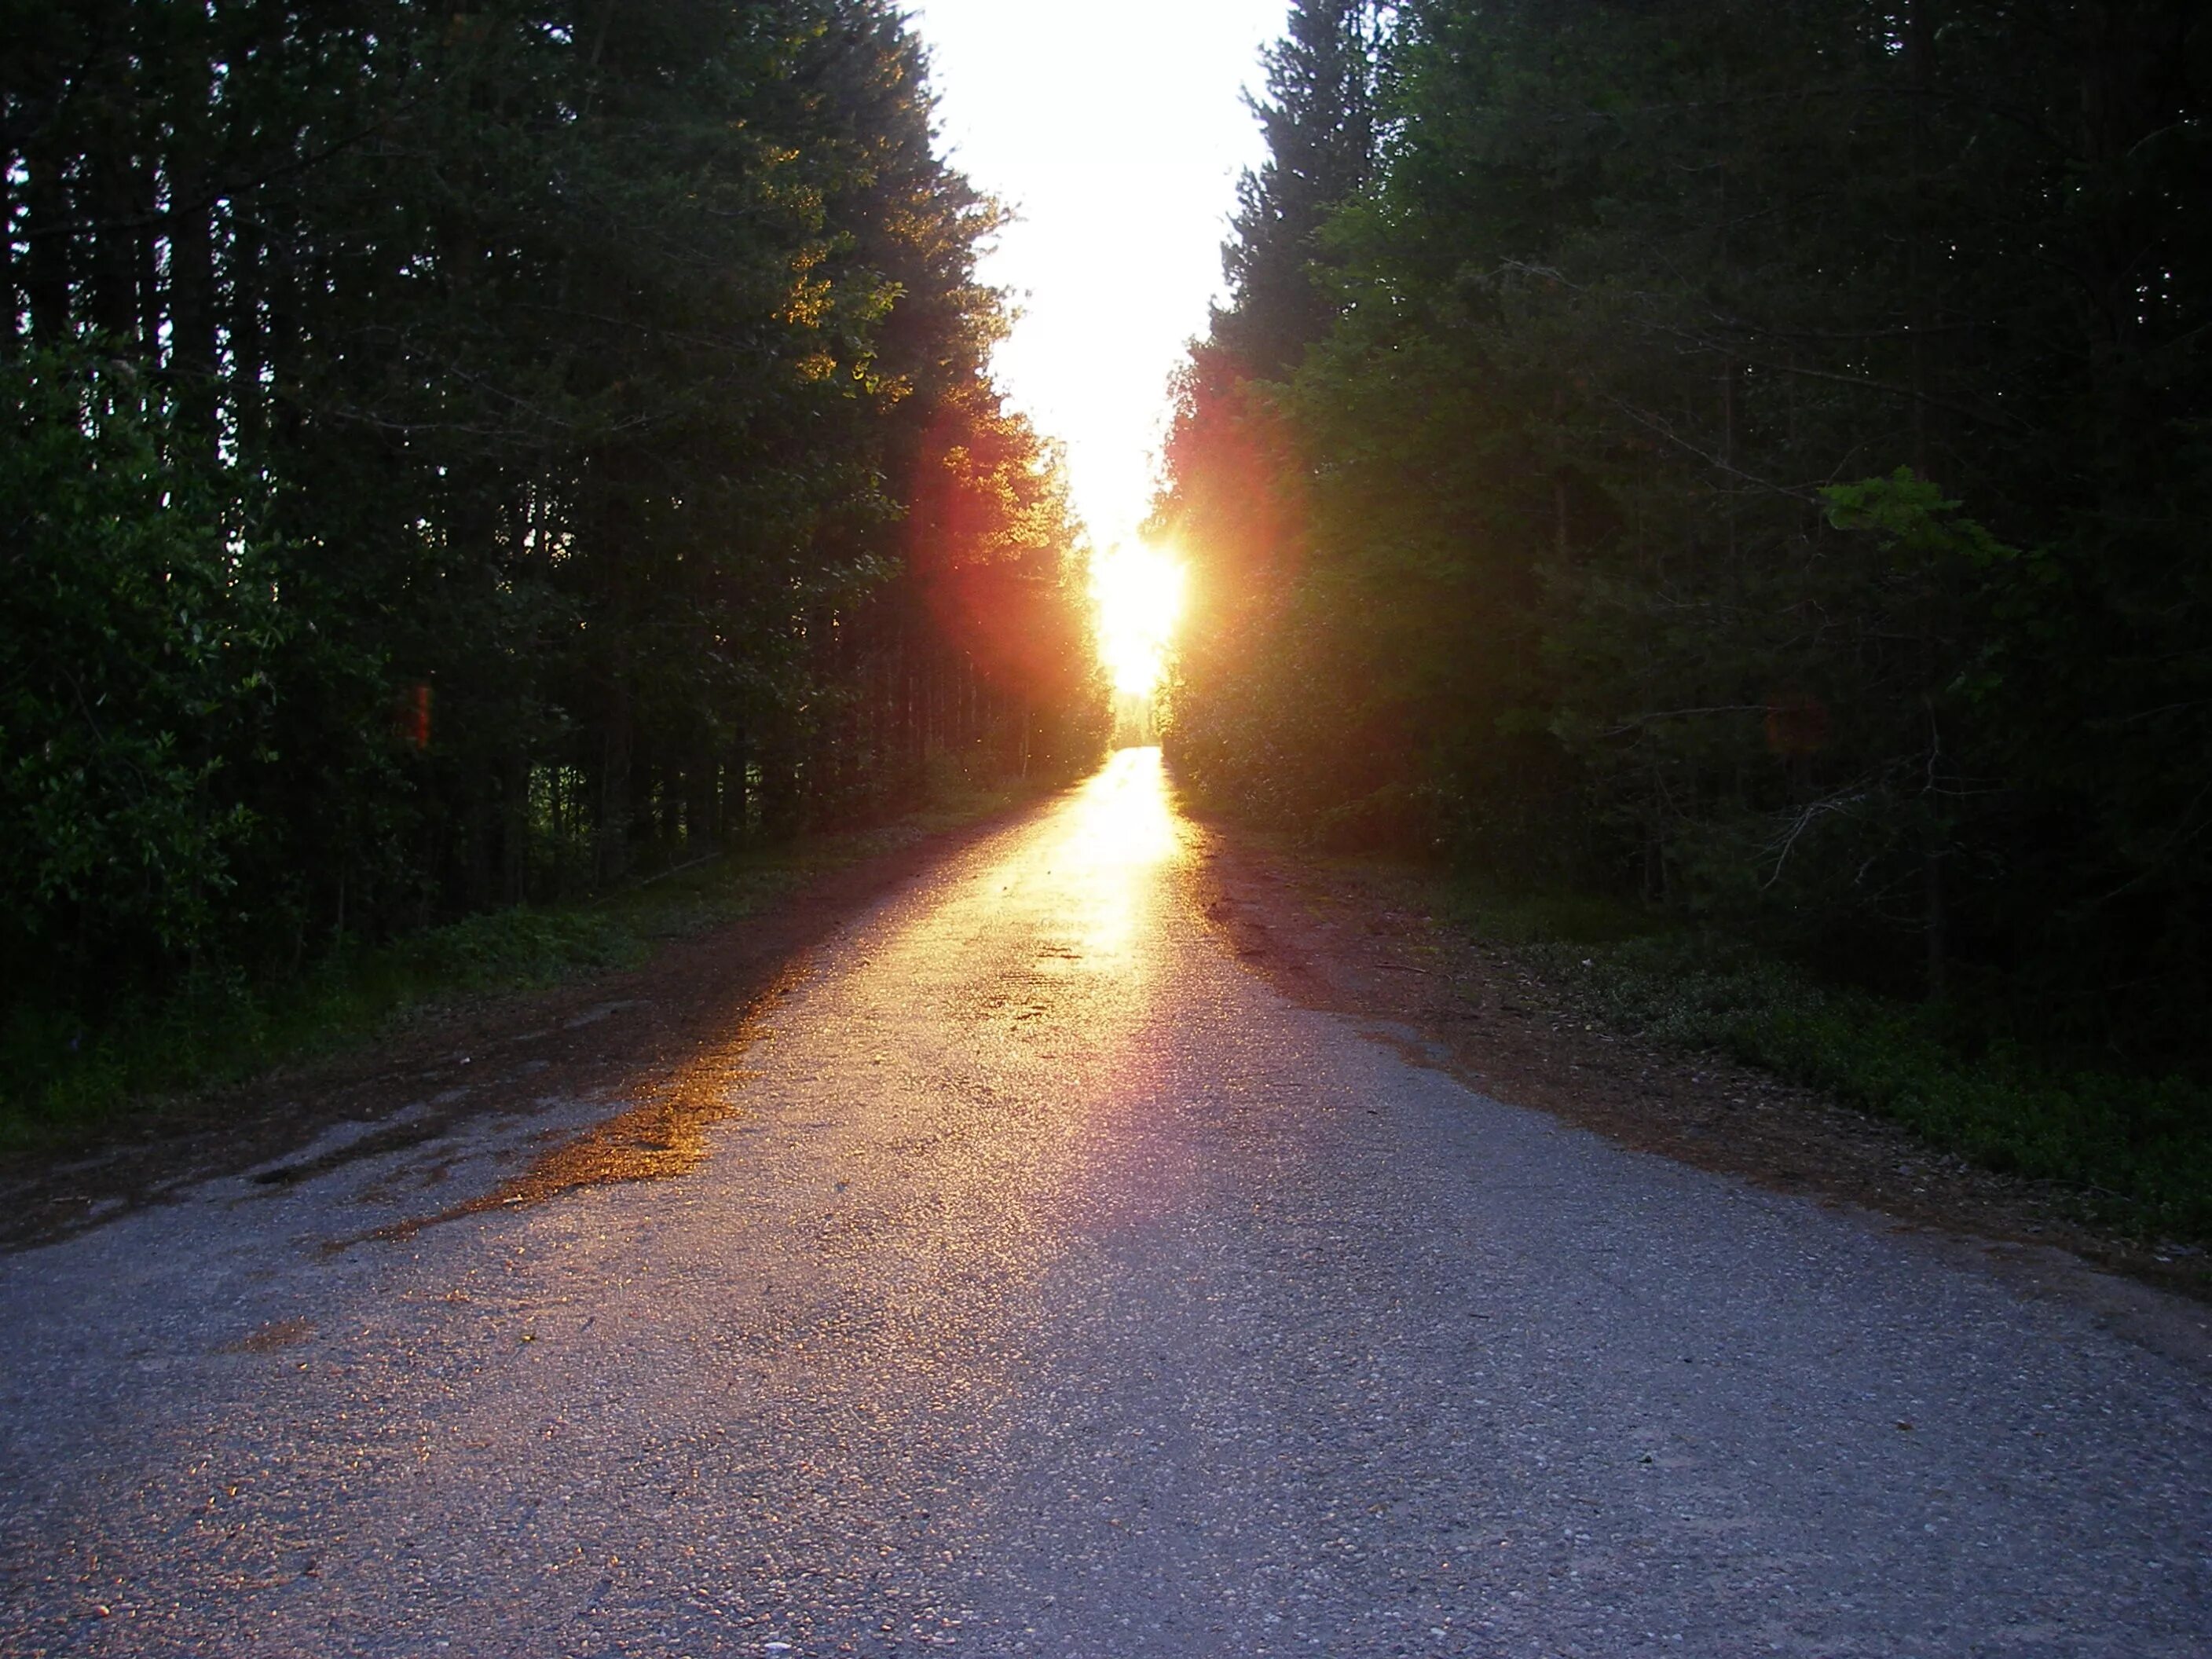 Дорога белела освещенная месяцем. Солнечная дорога. Дорога в лесу. Ночная дорога в лесу. Солнце на дороге.